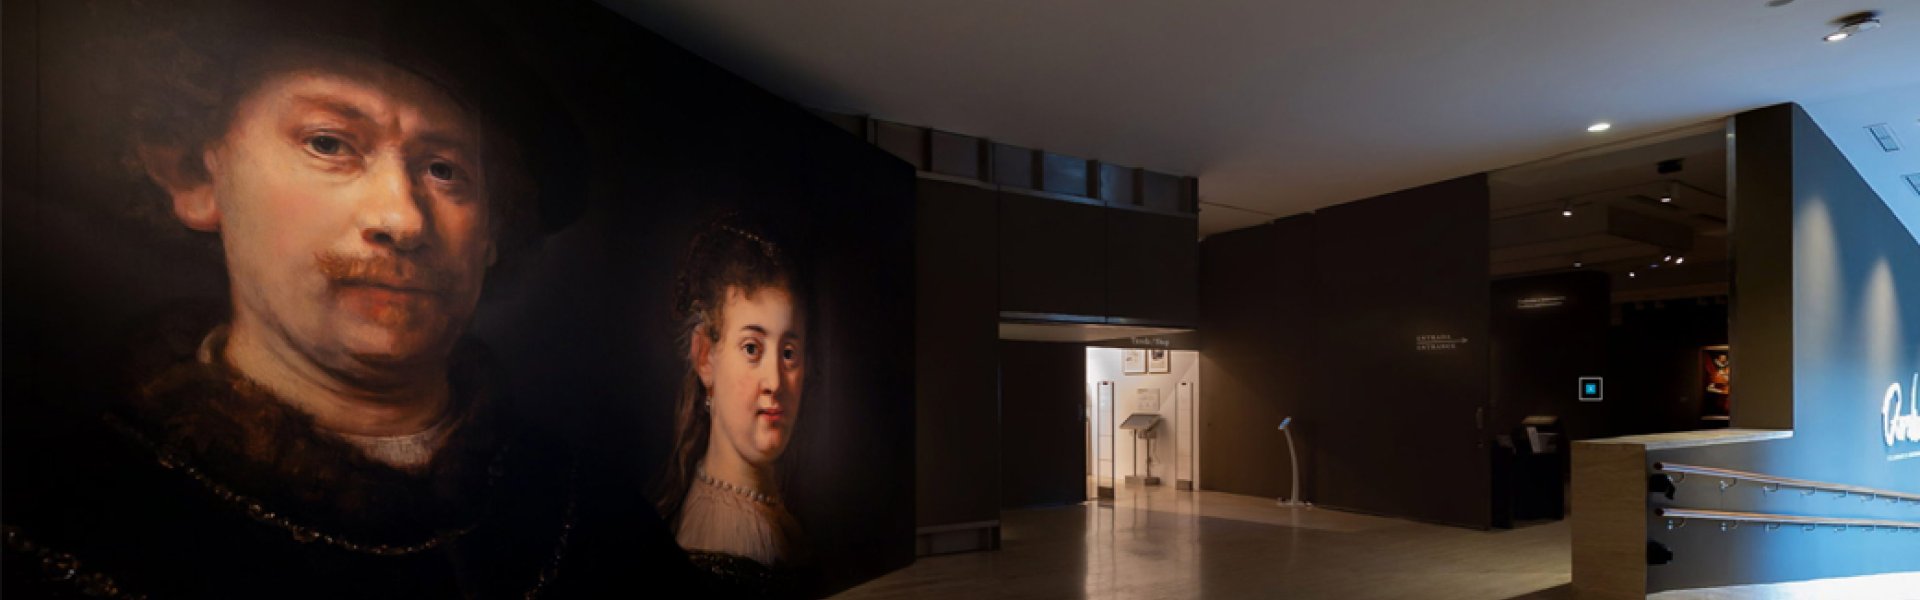 Visita virtual exposición "Rembrandt y el retrato en Amsterdam, 1590-1670)